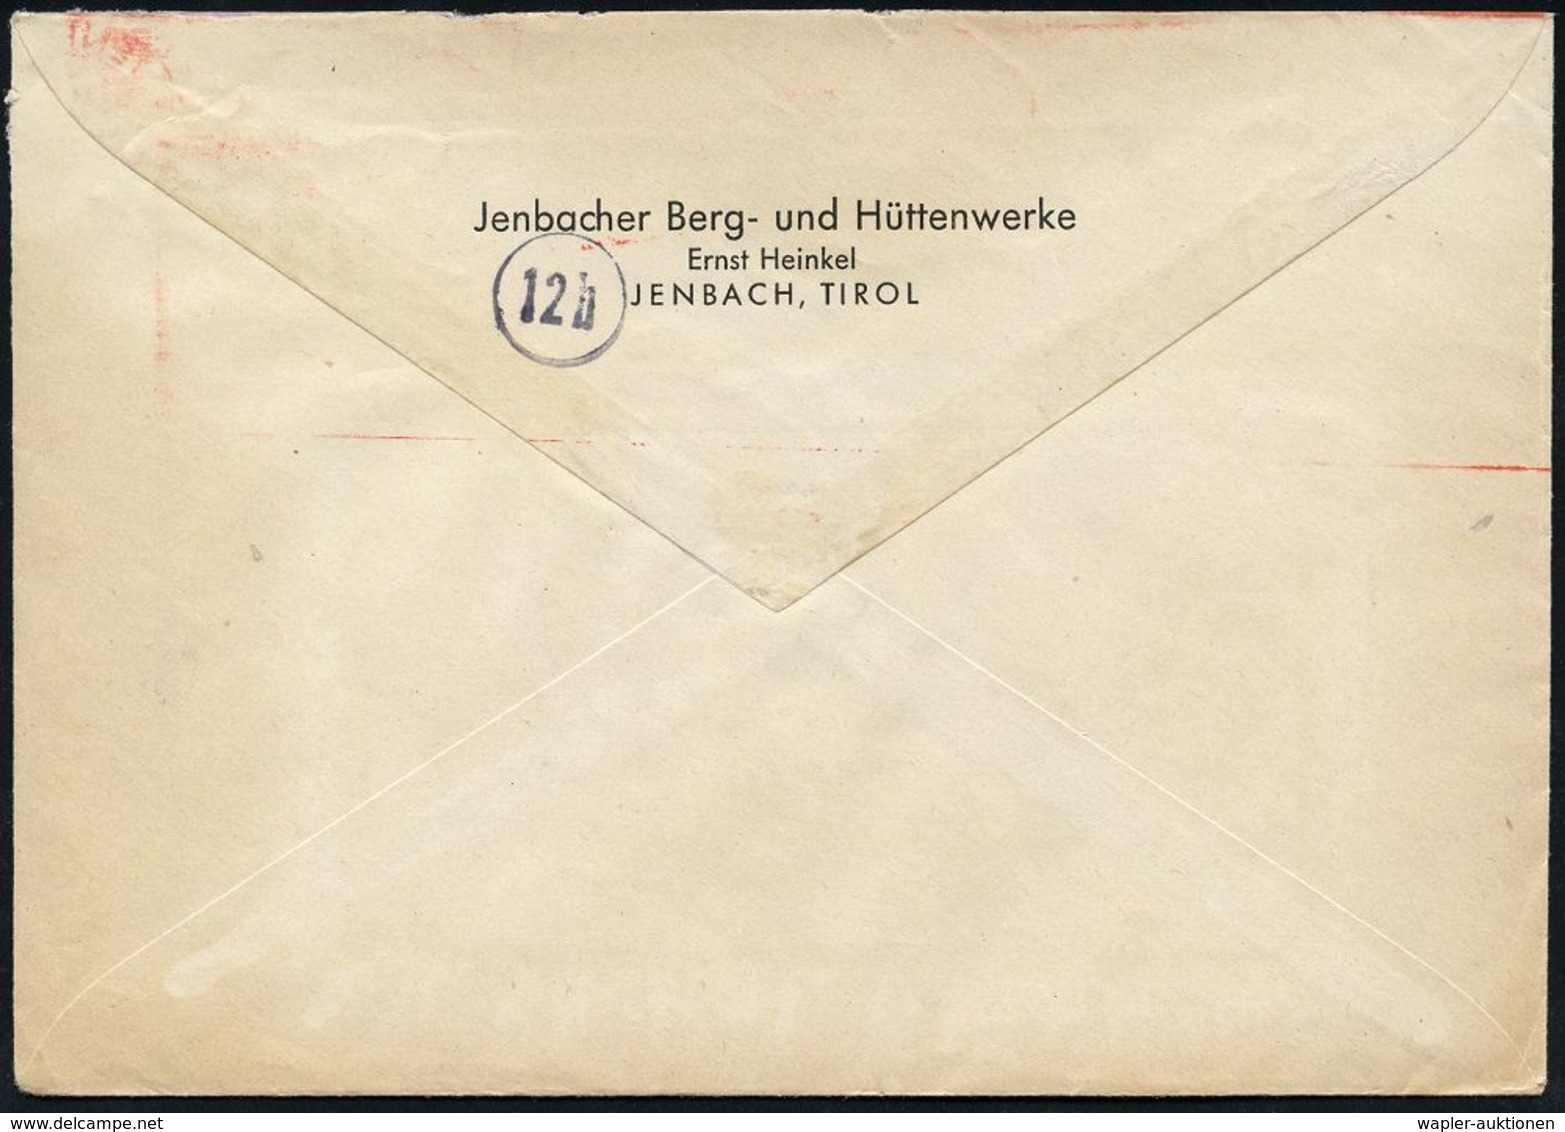 MILITÄRFLUGWESEN / MILITÄRFLUGZEUGE : JENBACH/ ERNST HEINKEL/ AG/ WERK JENBACH 1944 (23.12.) Sehr Seltener AFS = Heinkel - Airplanes